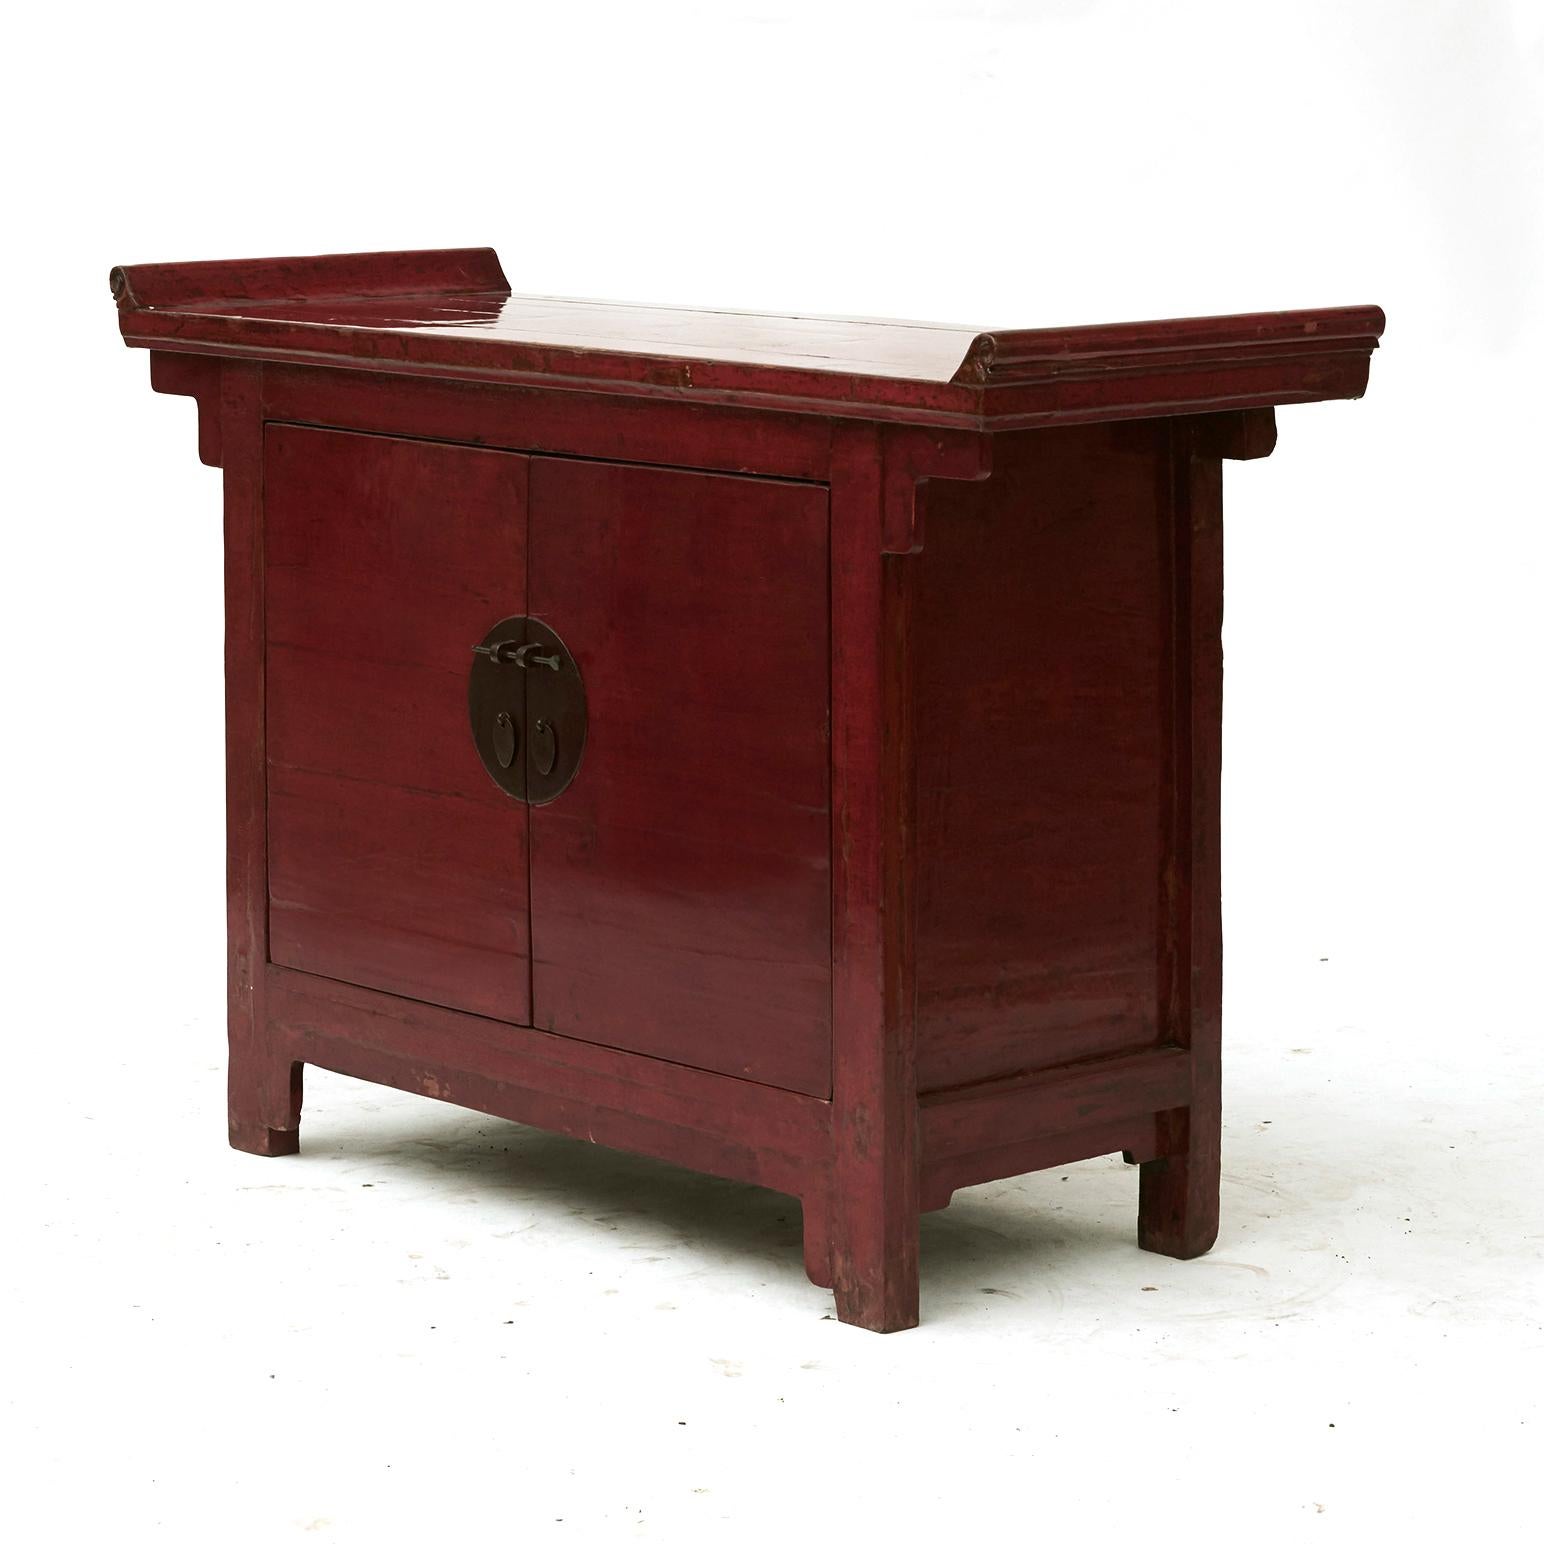 Cabinet d'autel chinois de la dynastie Ming, en laque rouge d'origine, avec patine naturelle liée à l'âge.
Le meuble présente un plateau rectangulaire à rebords évasés, surmontant une façade présentant une paire de doubles portes munies d'une